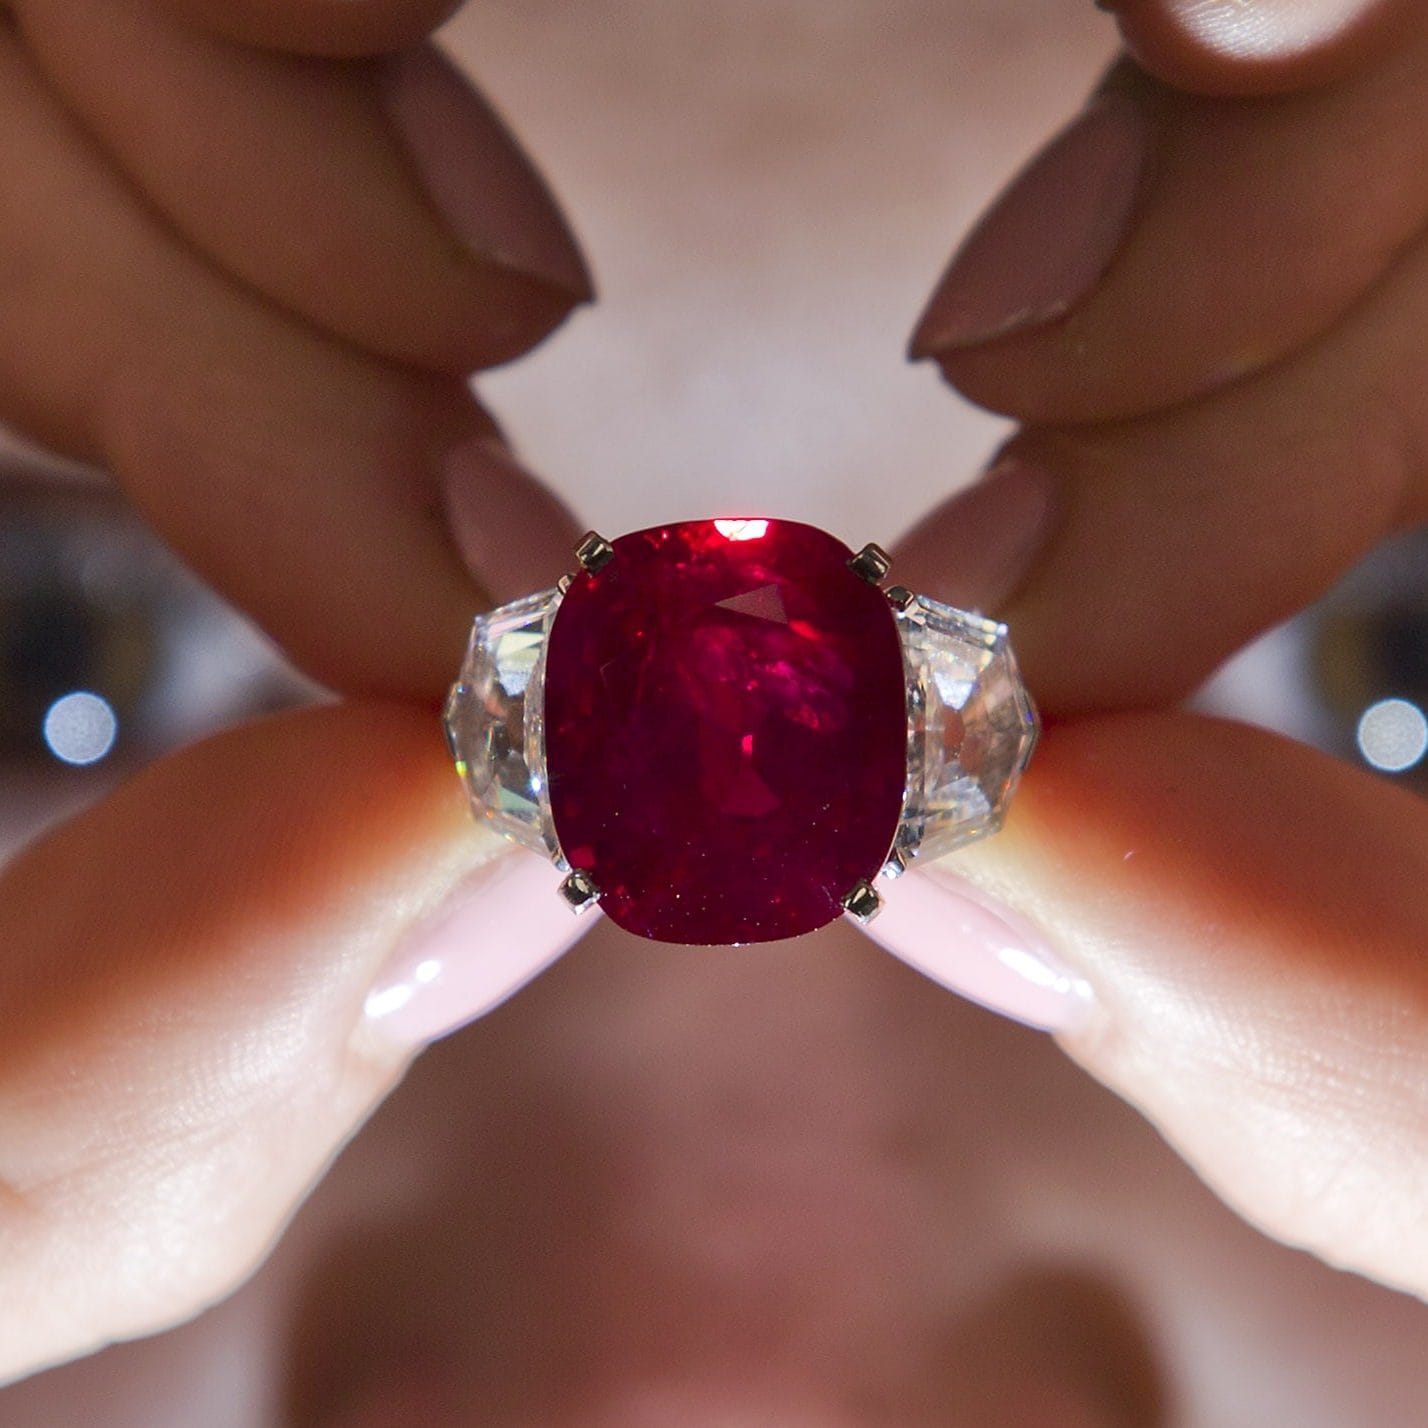 Рубіновий перстень Cartier Sunrise За цей криваво-червоний дорогоцінний камінь на аукціоні в 2019 році було віддано вражаючу суму в 19,6 мільйона фунтів стерлінгів, і він дійсно унікальний і єдиний у своєму роді. З красивим обрамленням з діамантів, що супроводжує величезний і привабливий дорогоцінний камінь. В даному випадку саме рідкісність виробу і прекрасний дорогоцінний камінь призводить до такої значної ціни - ці види рубінів настільки затребувані, що їхня ціна з часом буде тільки зростати.